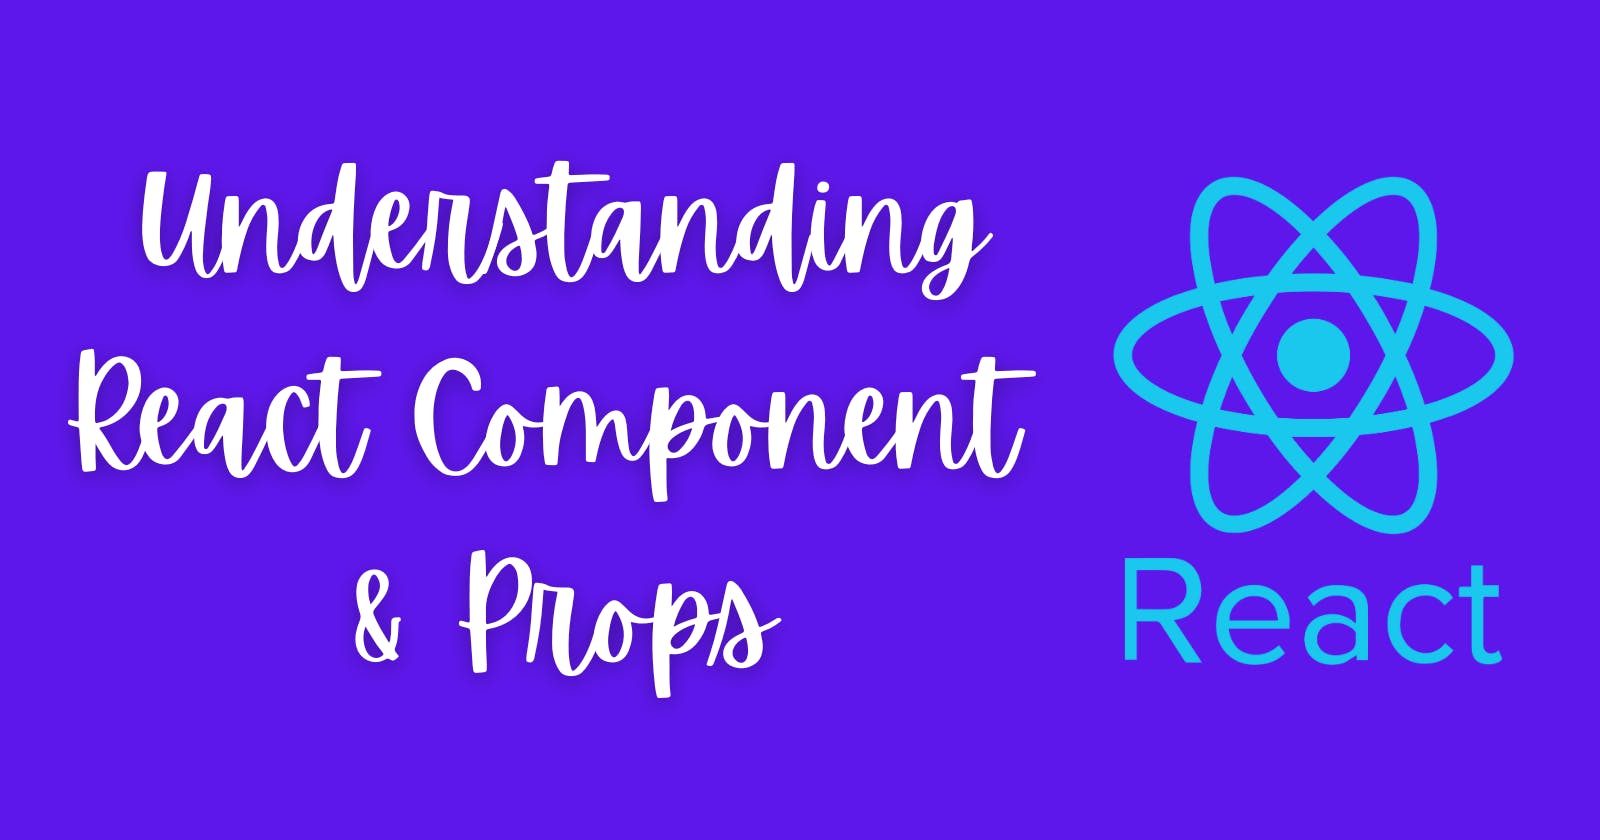 Understanding React Components & Props